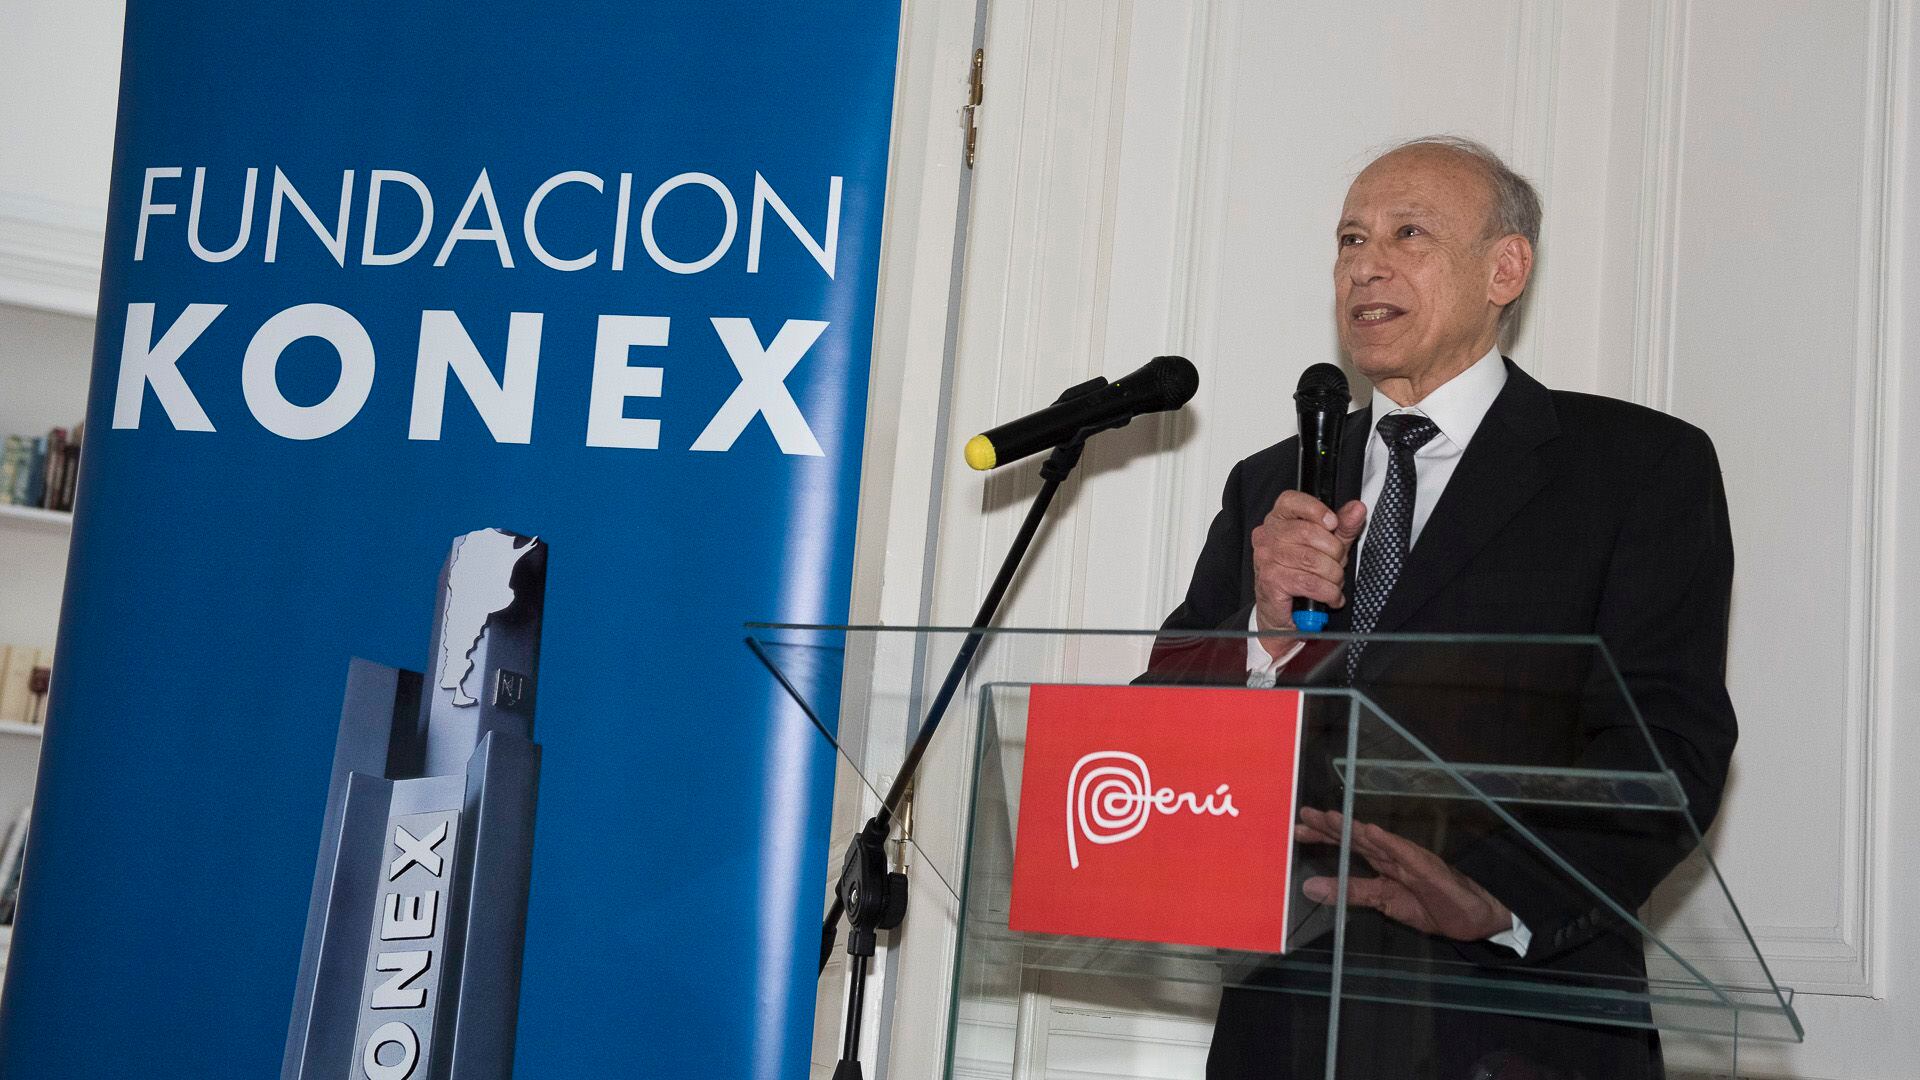 El presidente de la Fundación Konex, Luis Ovsejevich, destacó la importancia que representa que estas áreas del conocimiento sean premiadas justo en el momento que vive el país